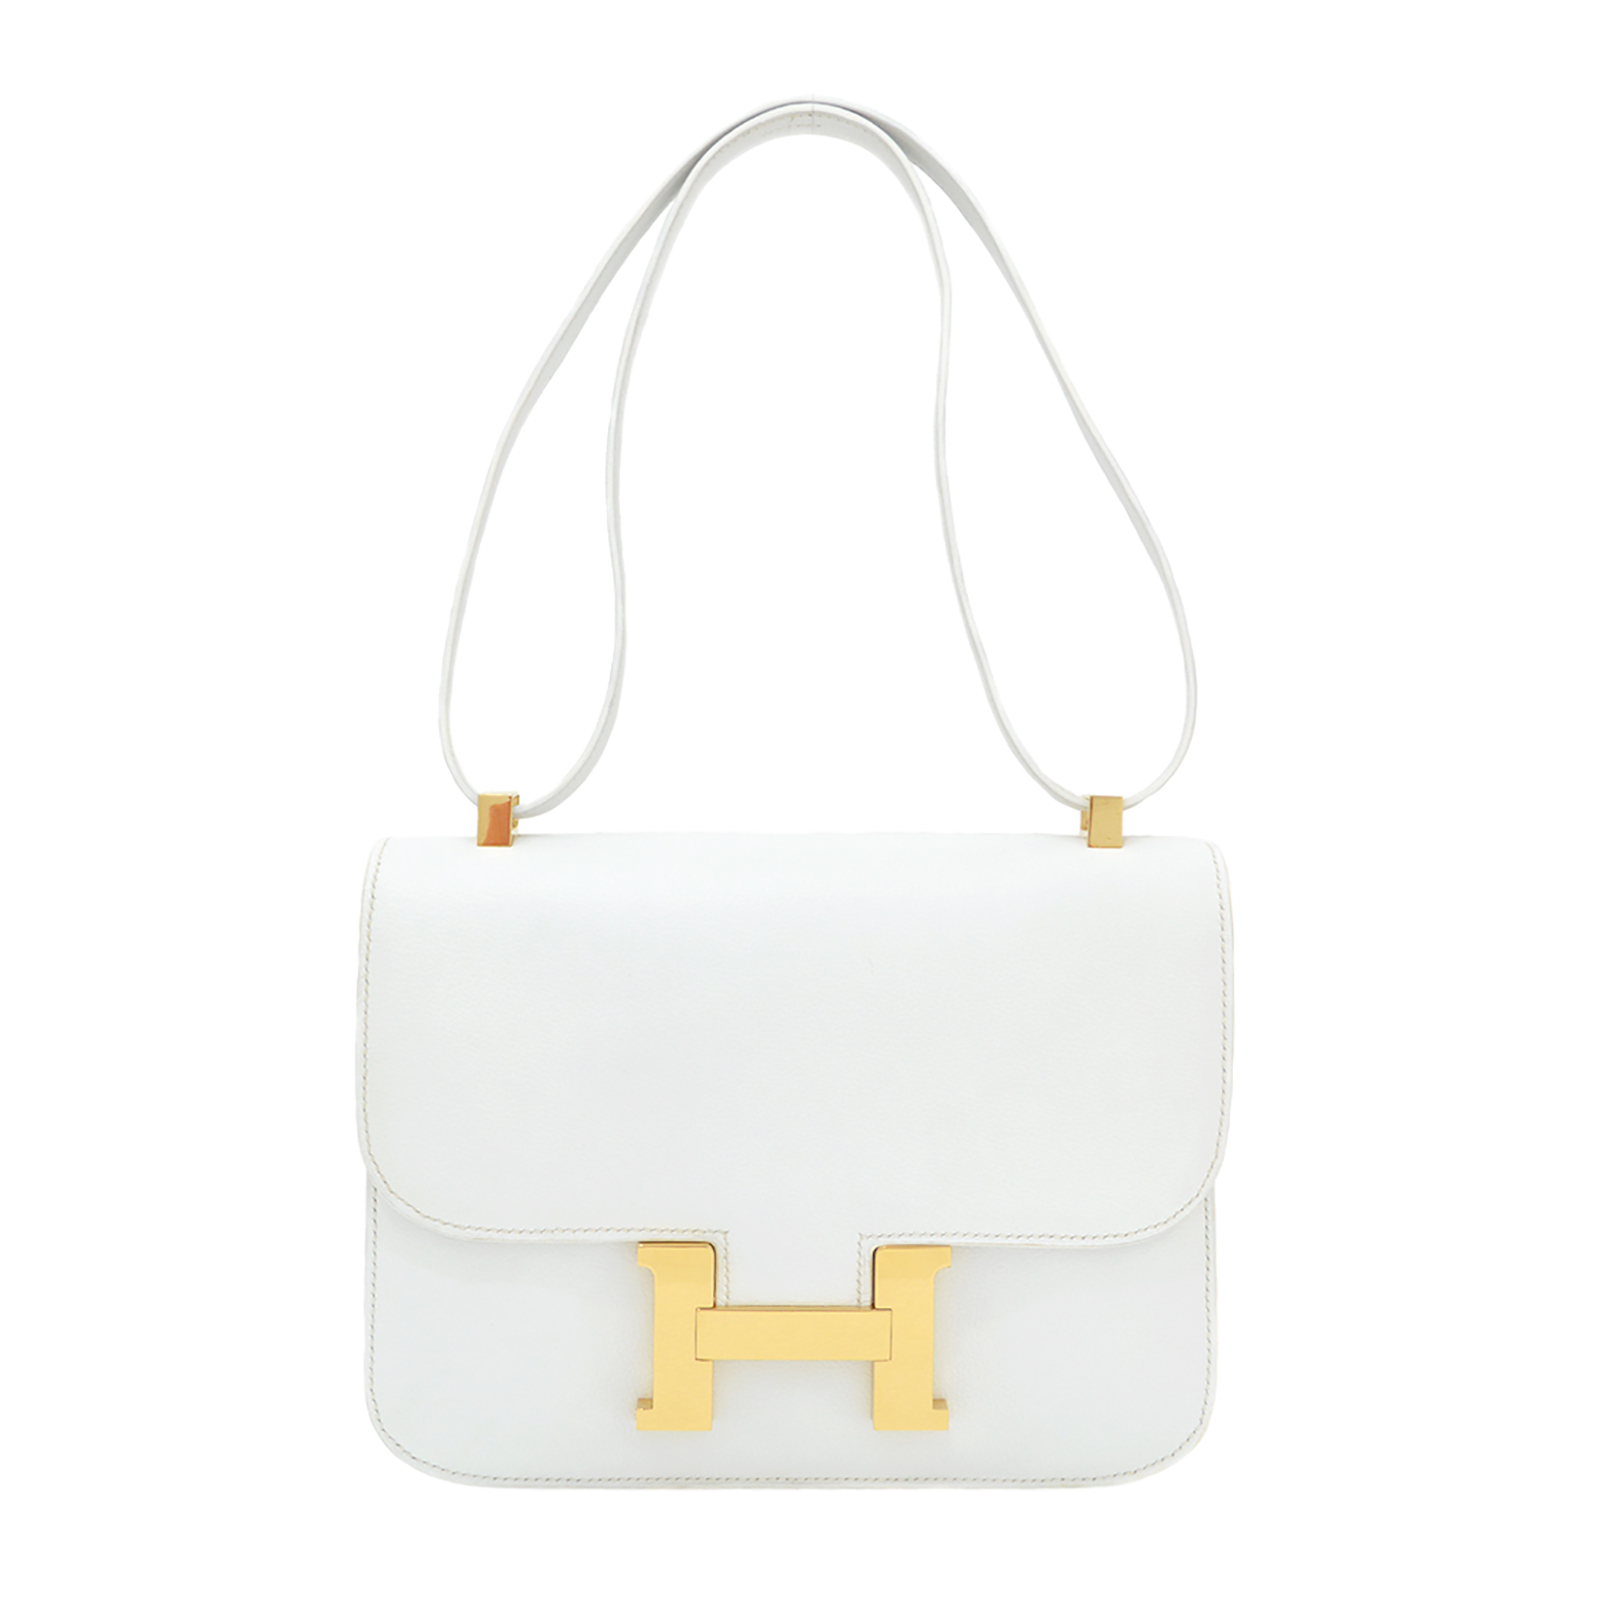 Hermès Constance Shoulder bag 386654